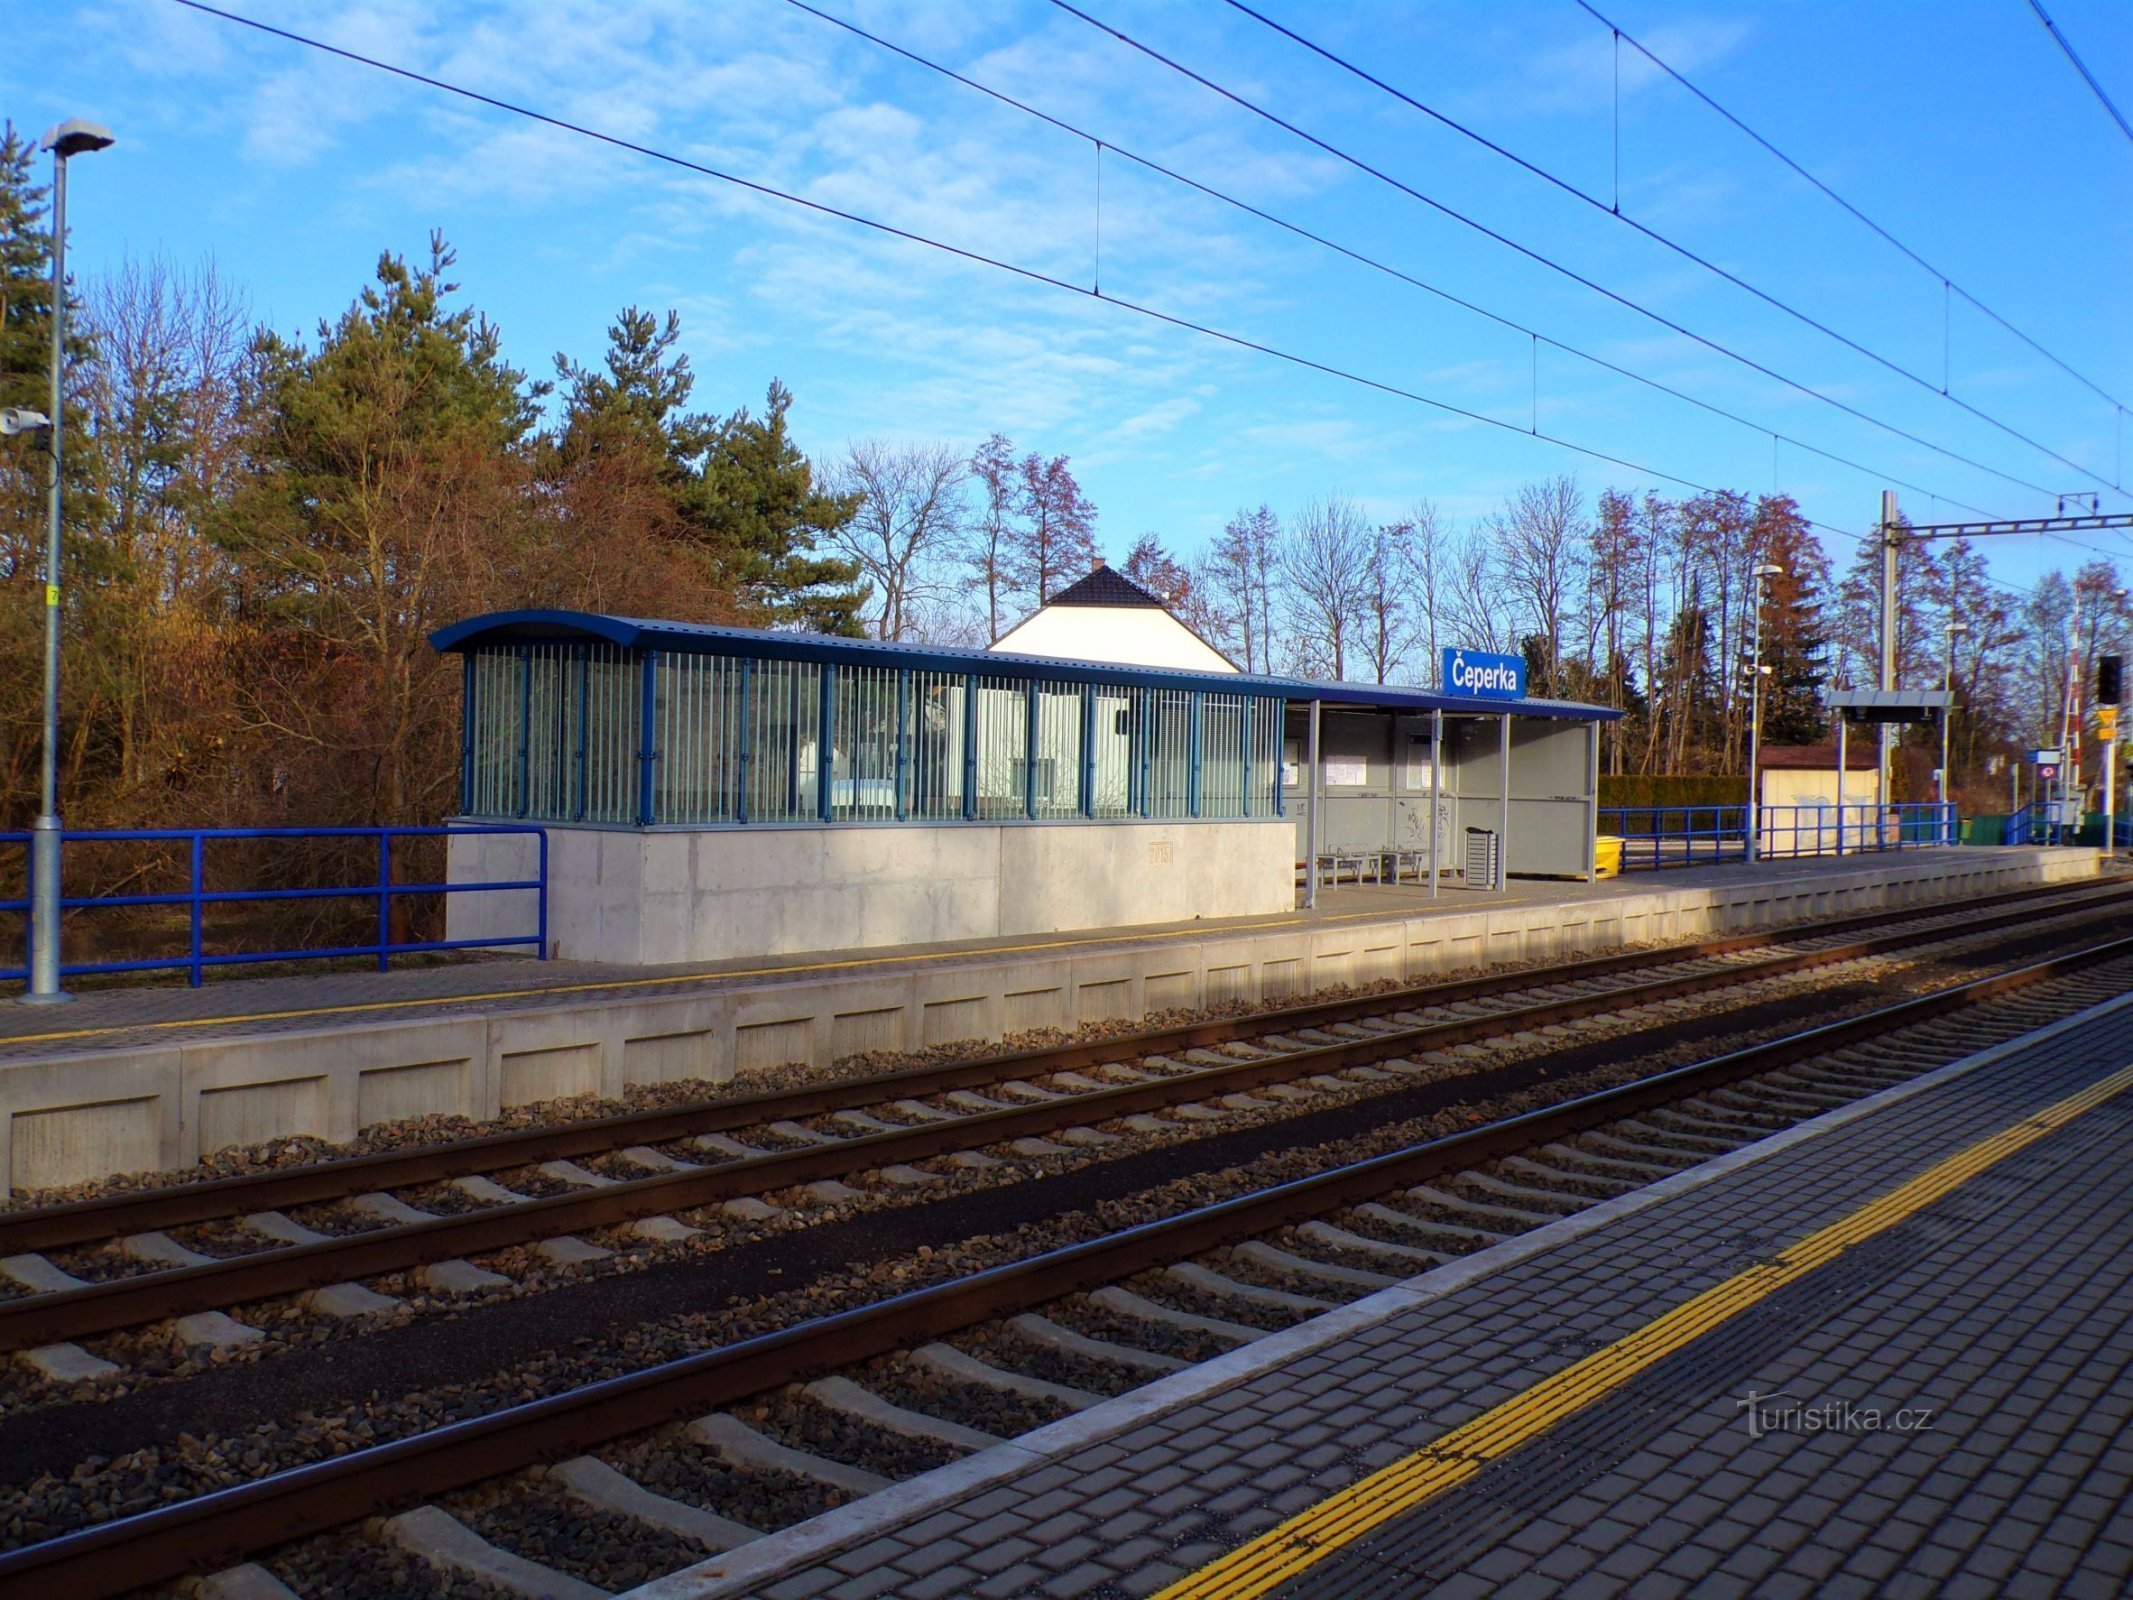 Stazione ferroviaria (Čeperka, 18.2.2022)